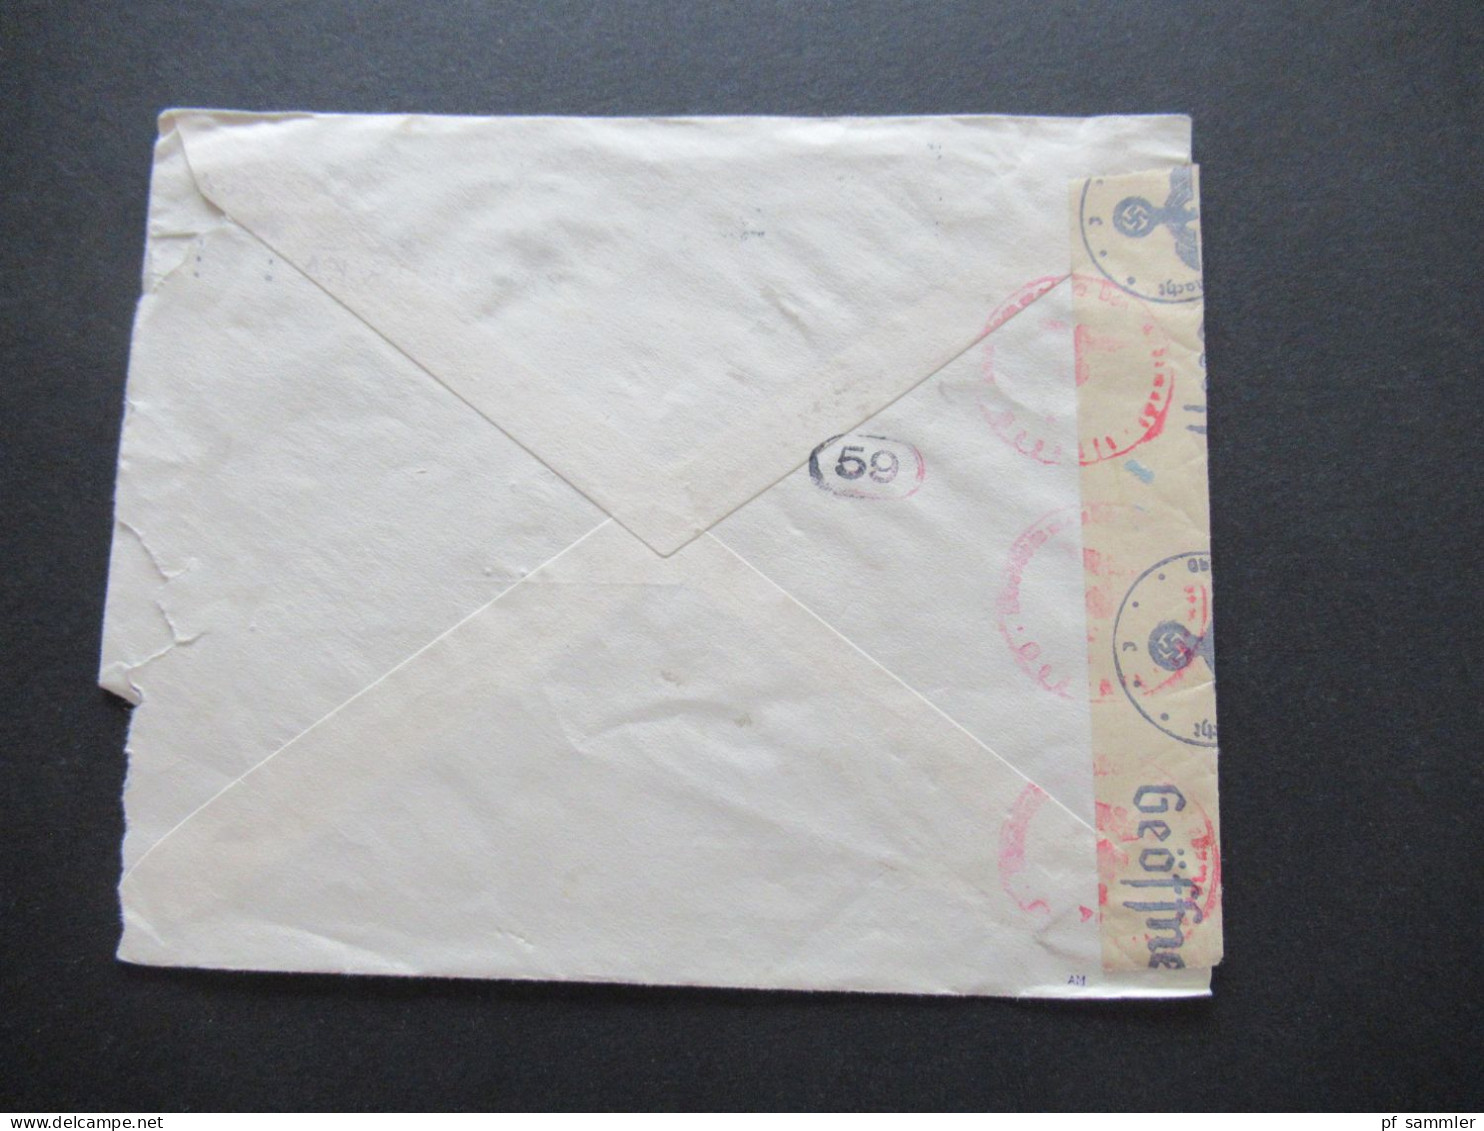 Niederlande 1942 Zensursbeleg Umschlag Kunst Voor Allen H. Leicher Amsterdam - Menden / OKW Zensurstreifen Geöffnet - Storia Postale